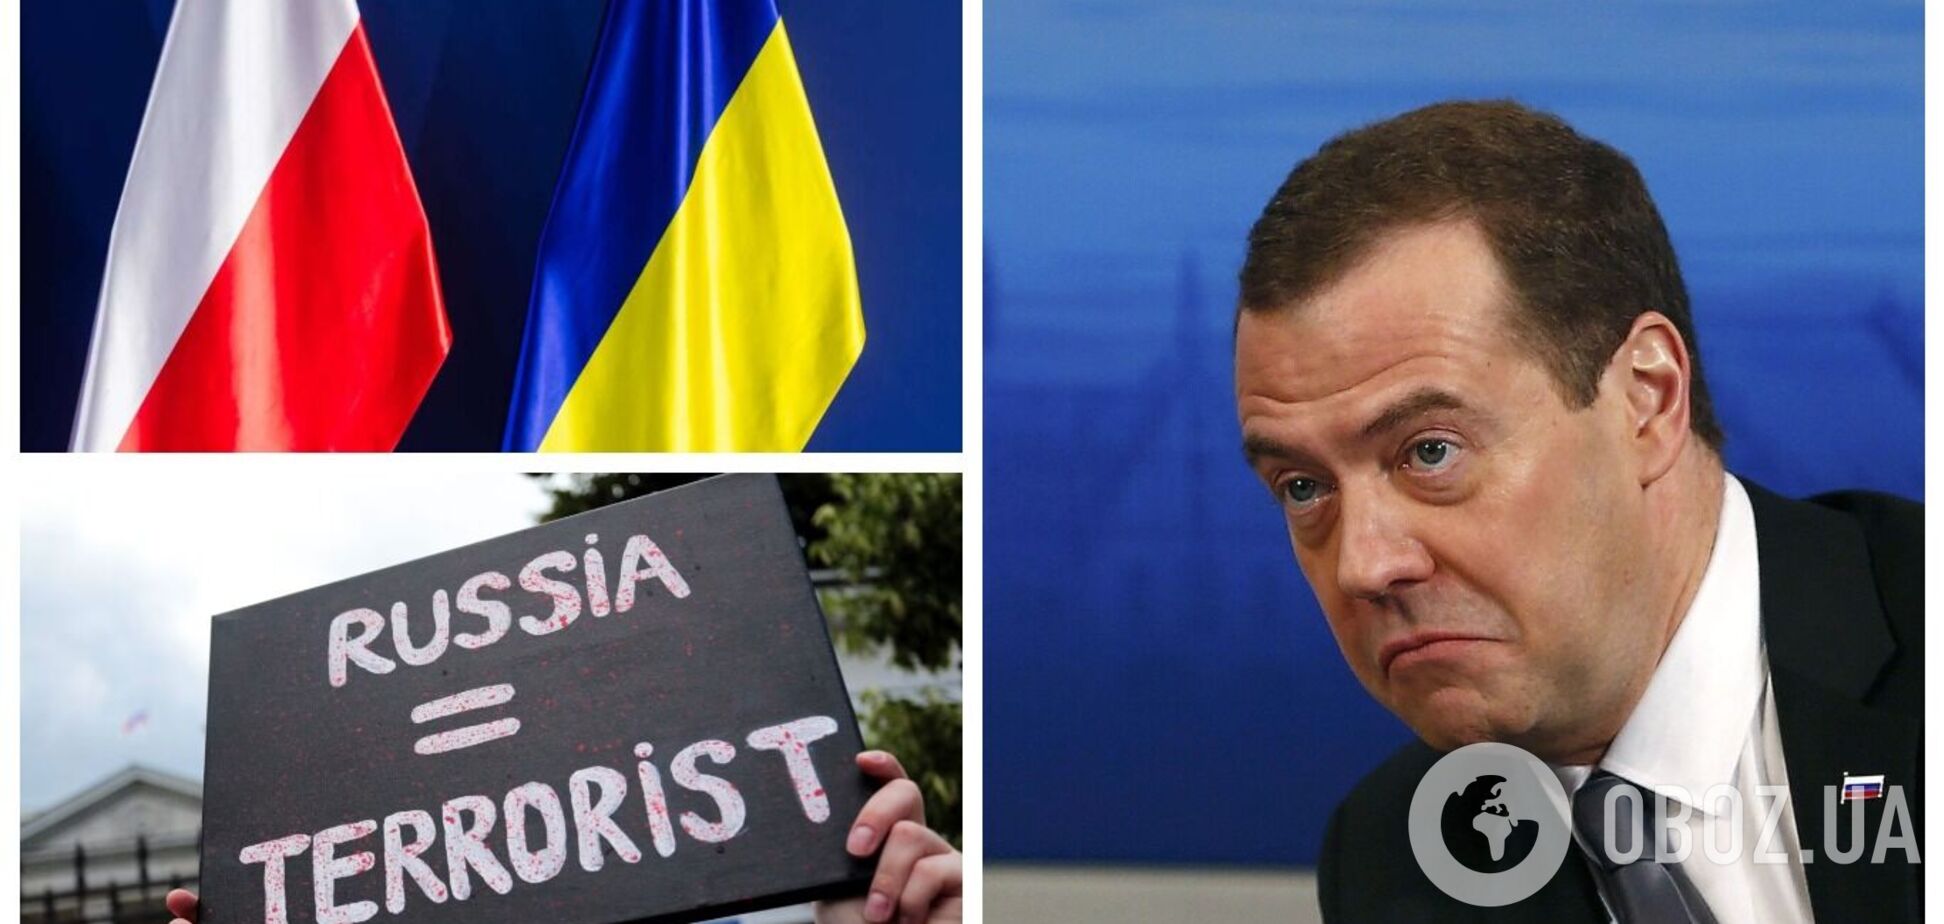 'Попробовали крови': Медведев устроил истерику из-за Польши, обвинив ее в агрессивных планах, и вспомнил об Украине